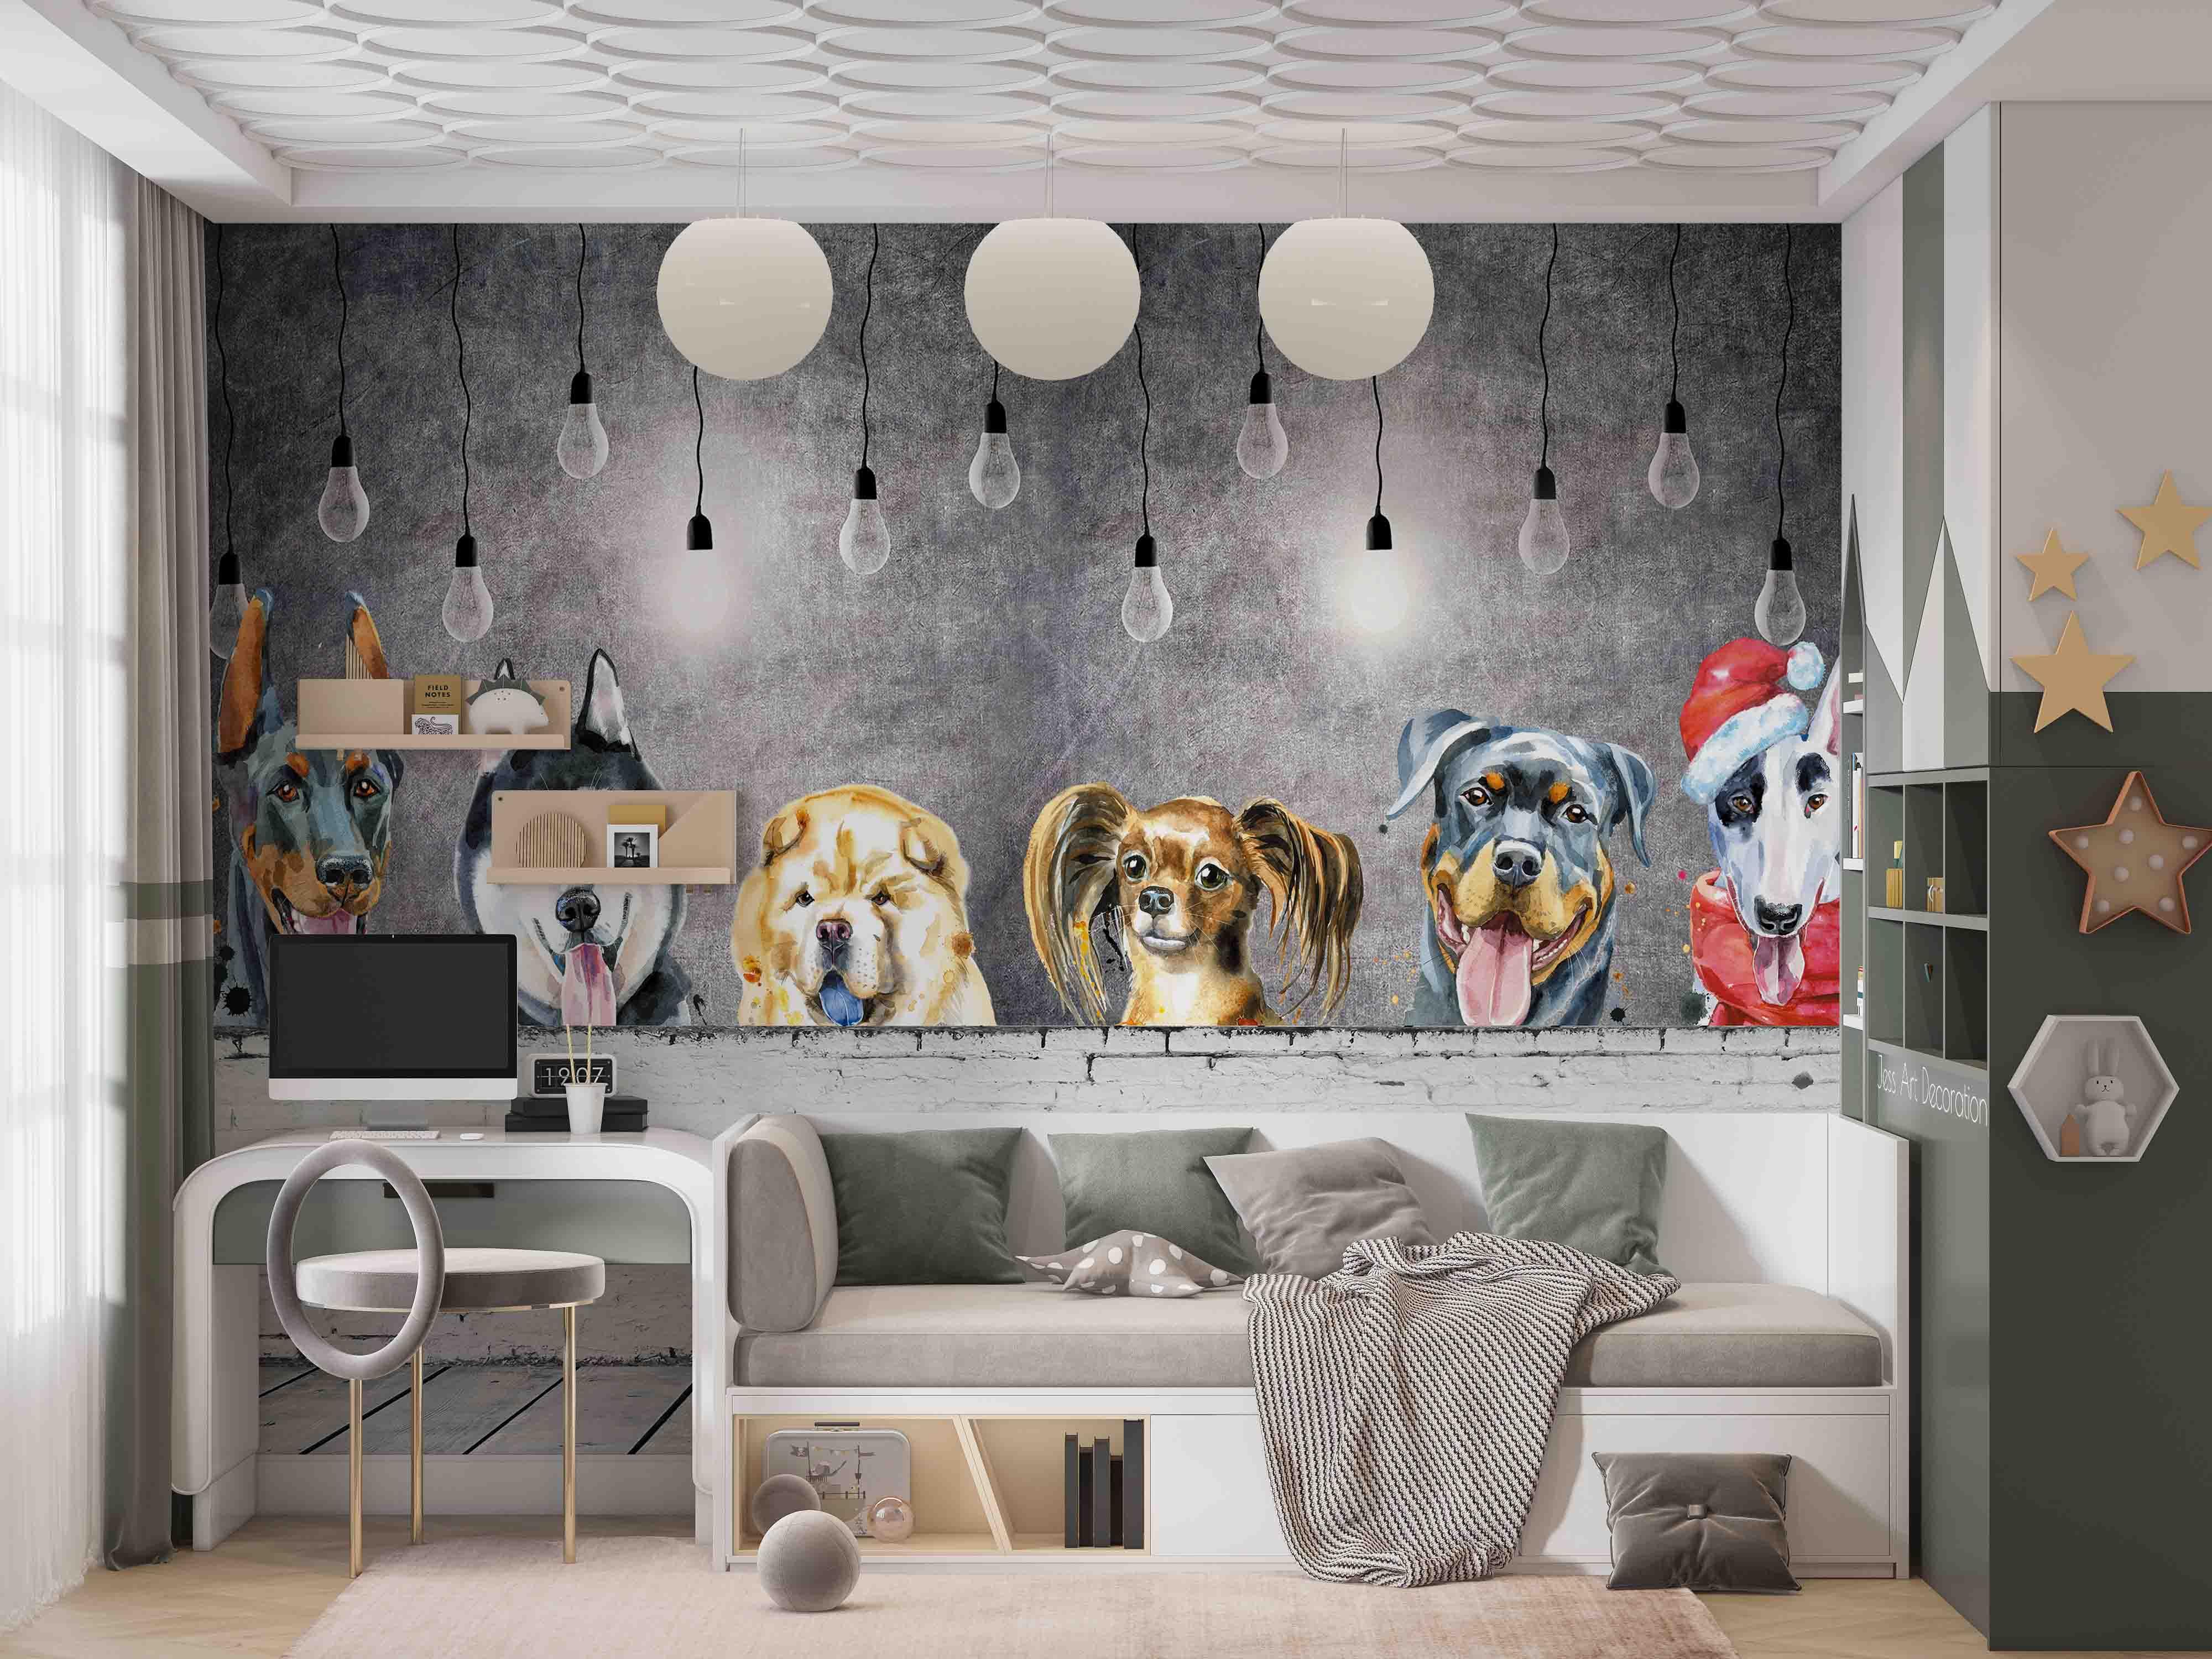 3D Puppy Pattern Wall Mural Wallpaper GD 2720- Jess Art Decoration